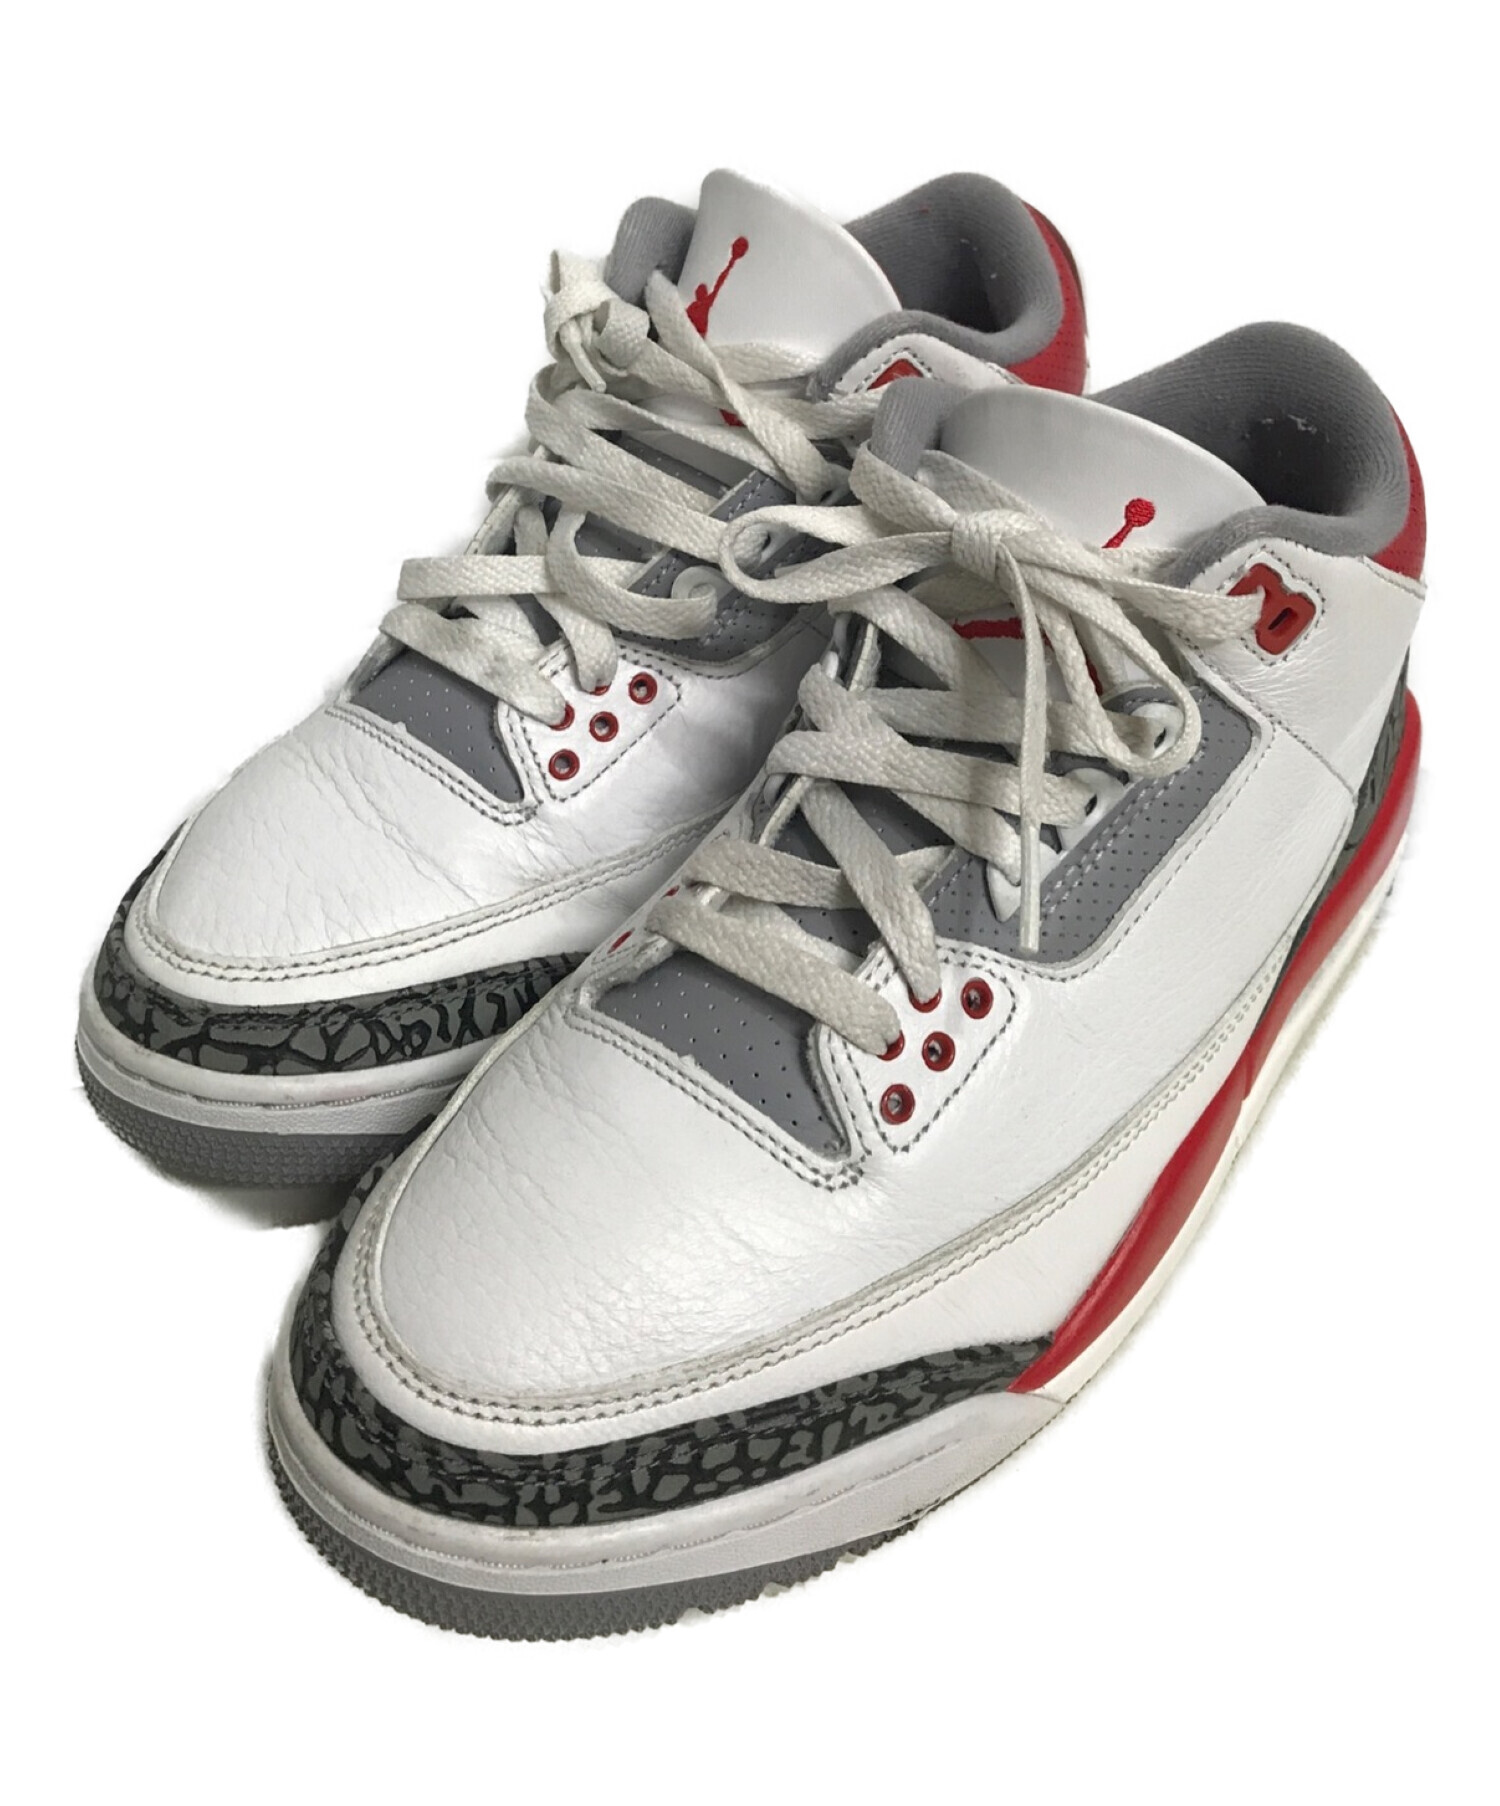 Nike Air Jordan 3 OG "Fire Red"  29 cm